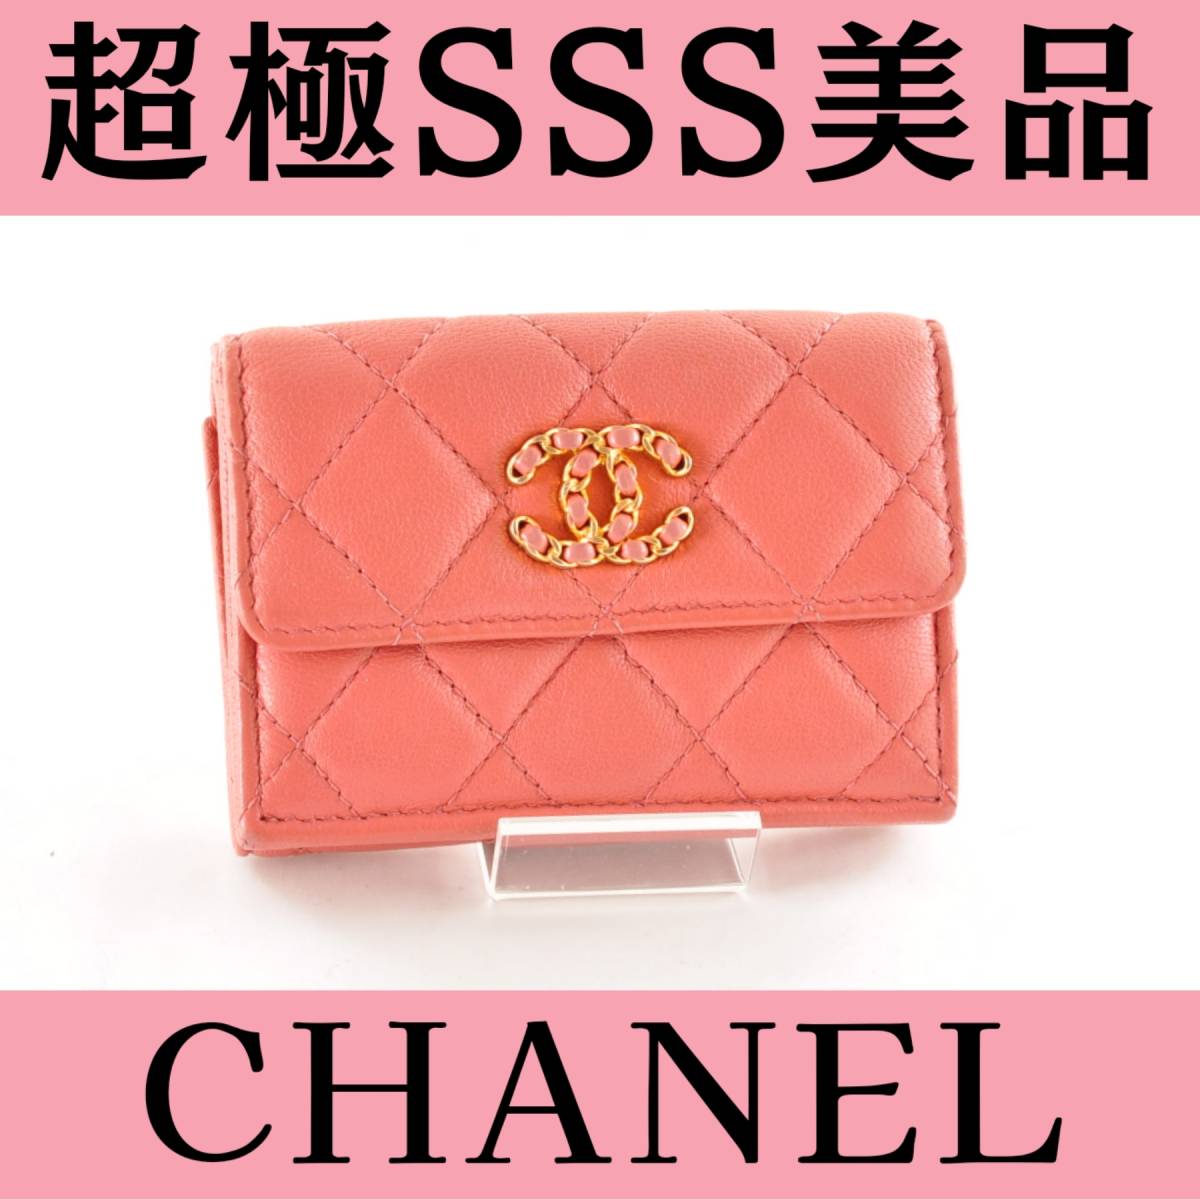 CHANEL シャネル 【SSS】 スモール フラップウォレット 三つ折り財布 ピンク